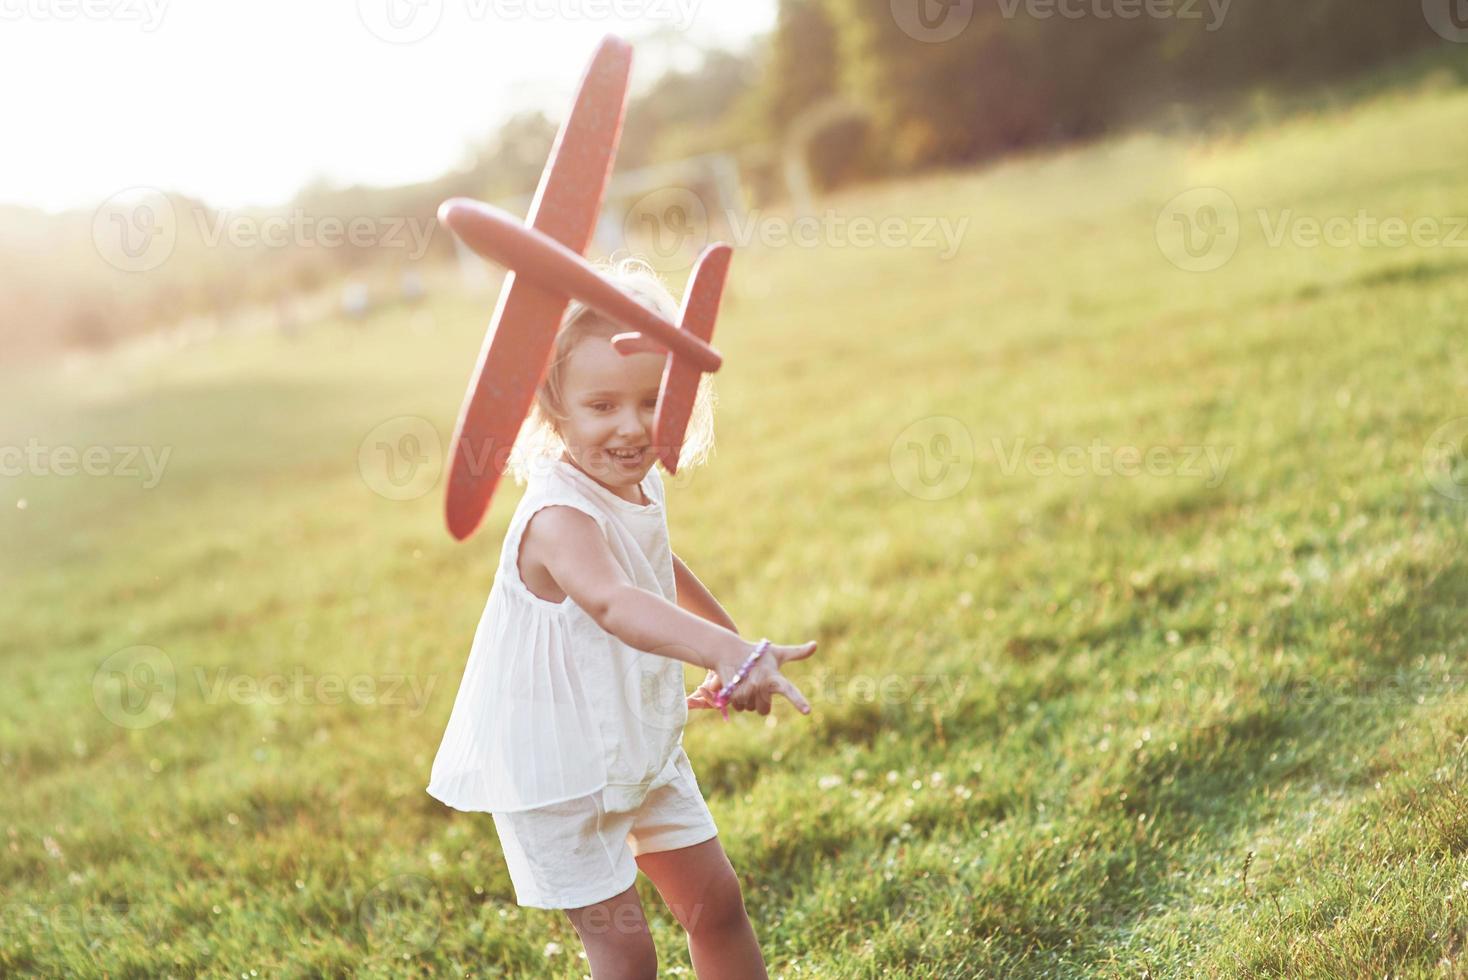 lancer dans les airs. heureuse petite fille qui court sur le terrain avec un avion jouet rouge dans les mains photo